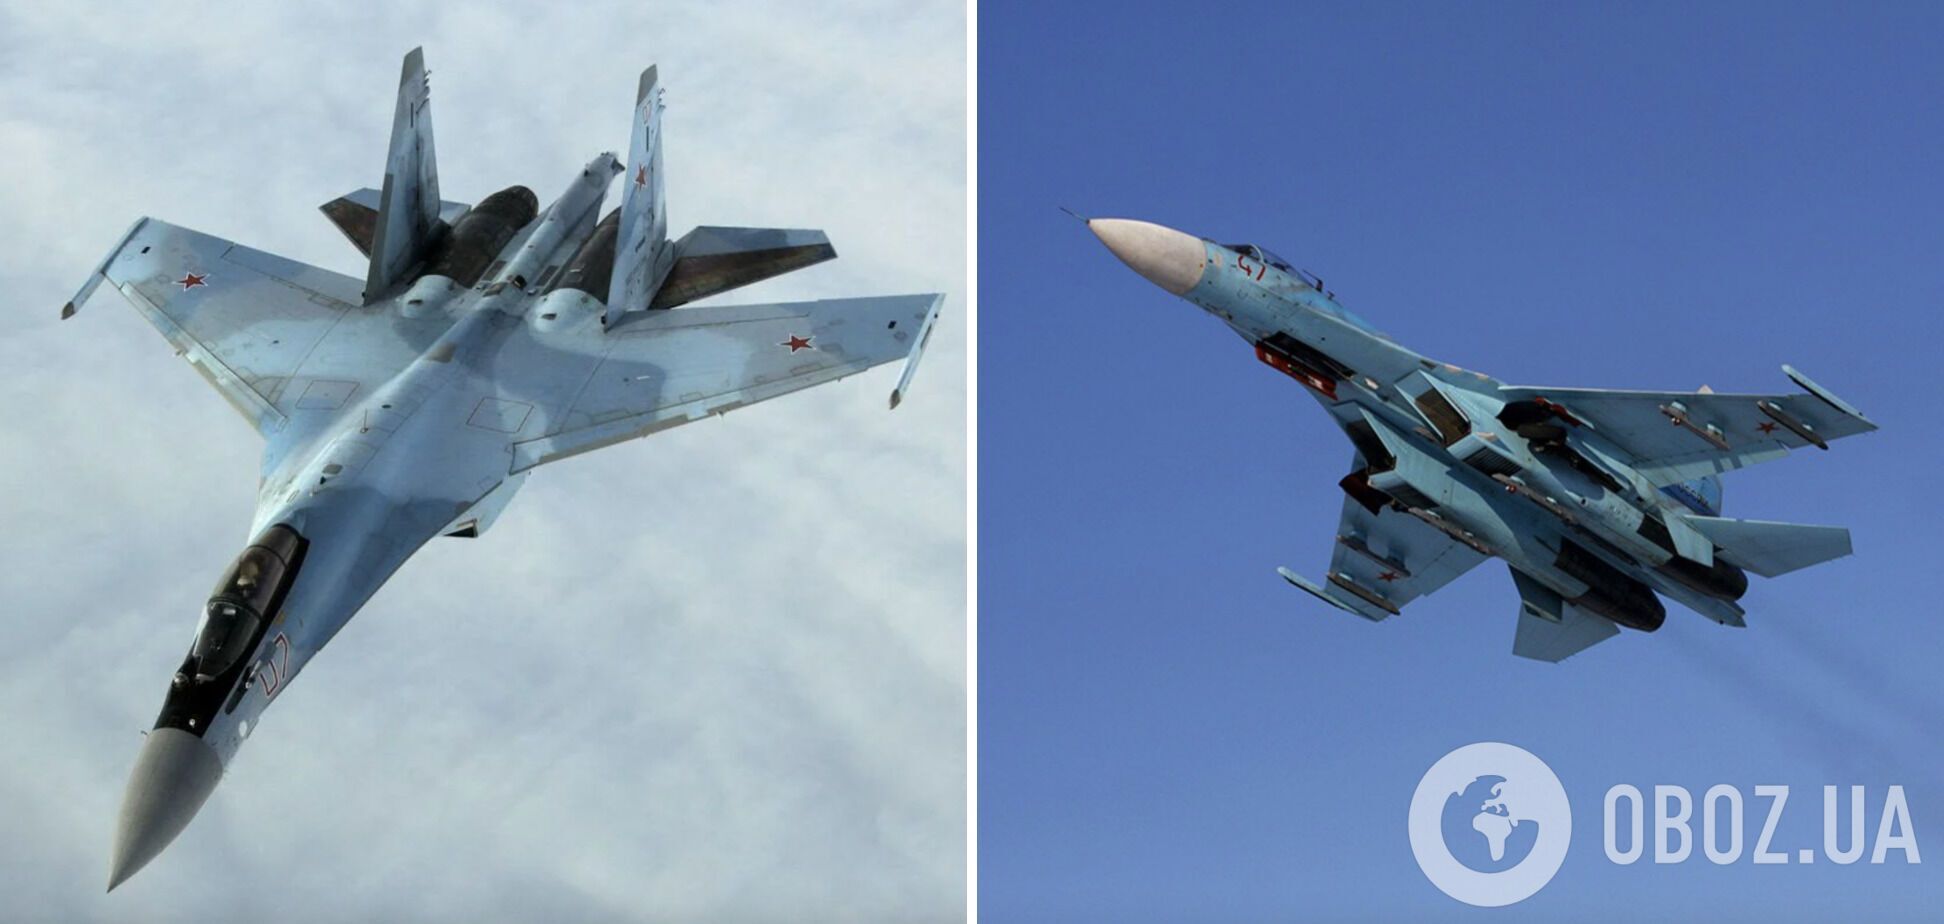 Оккупанты из систем ПВО сбили российский самолет над Донецком. Фото и видео